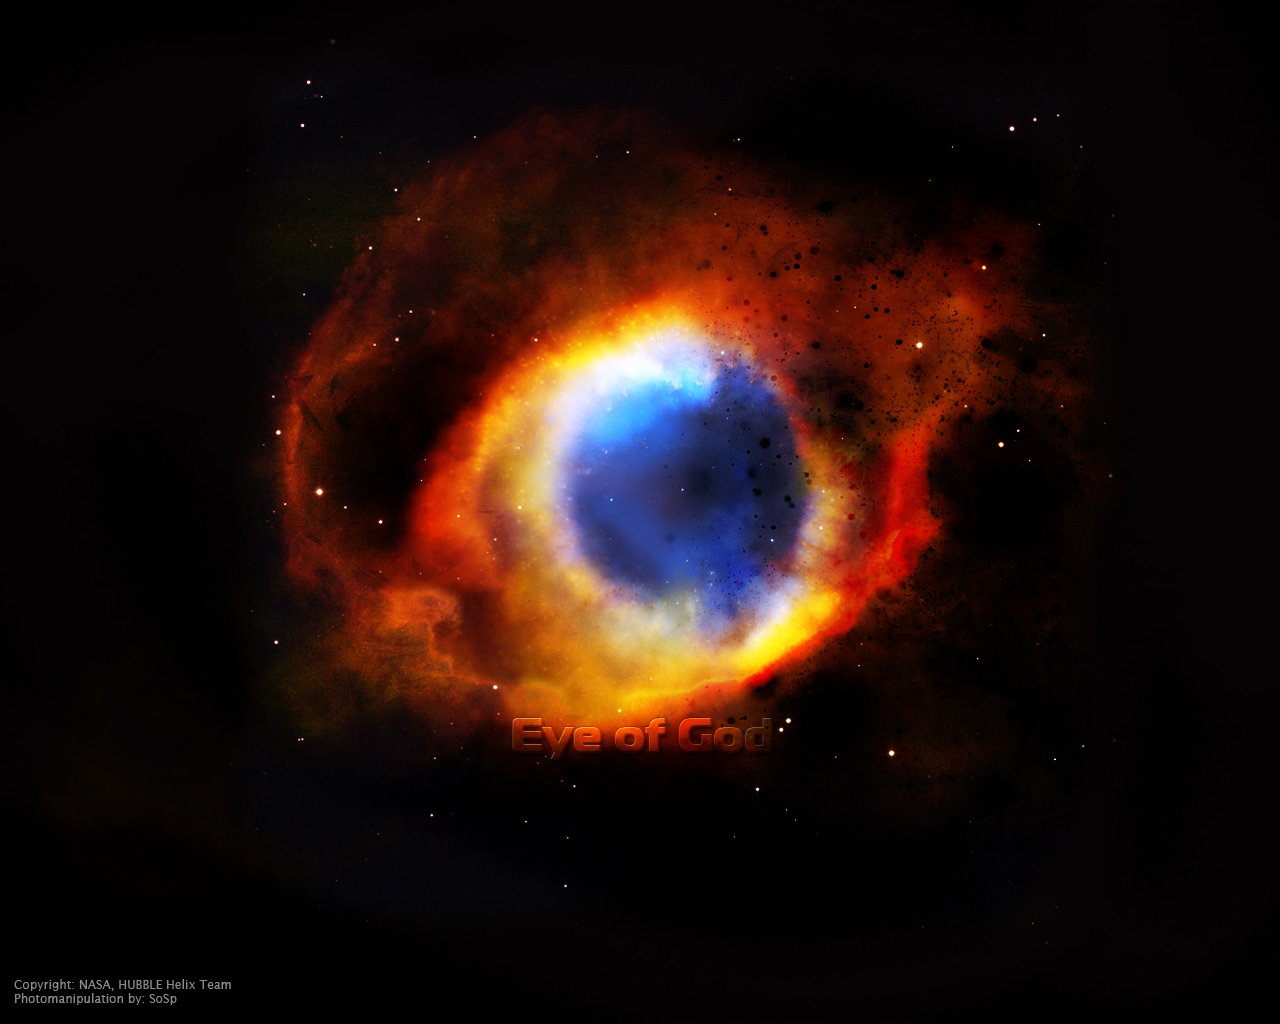 Eye of God by SSpirito